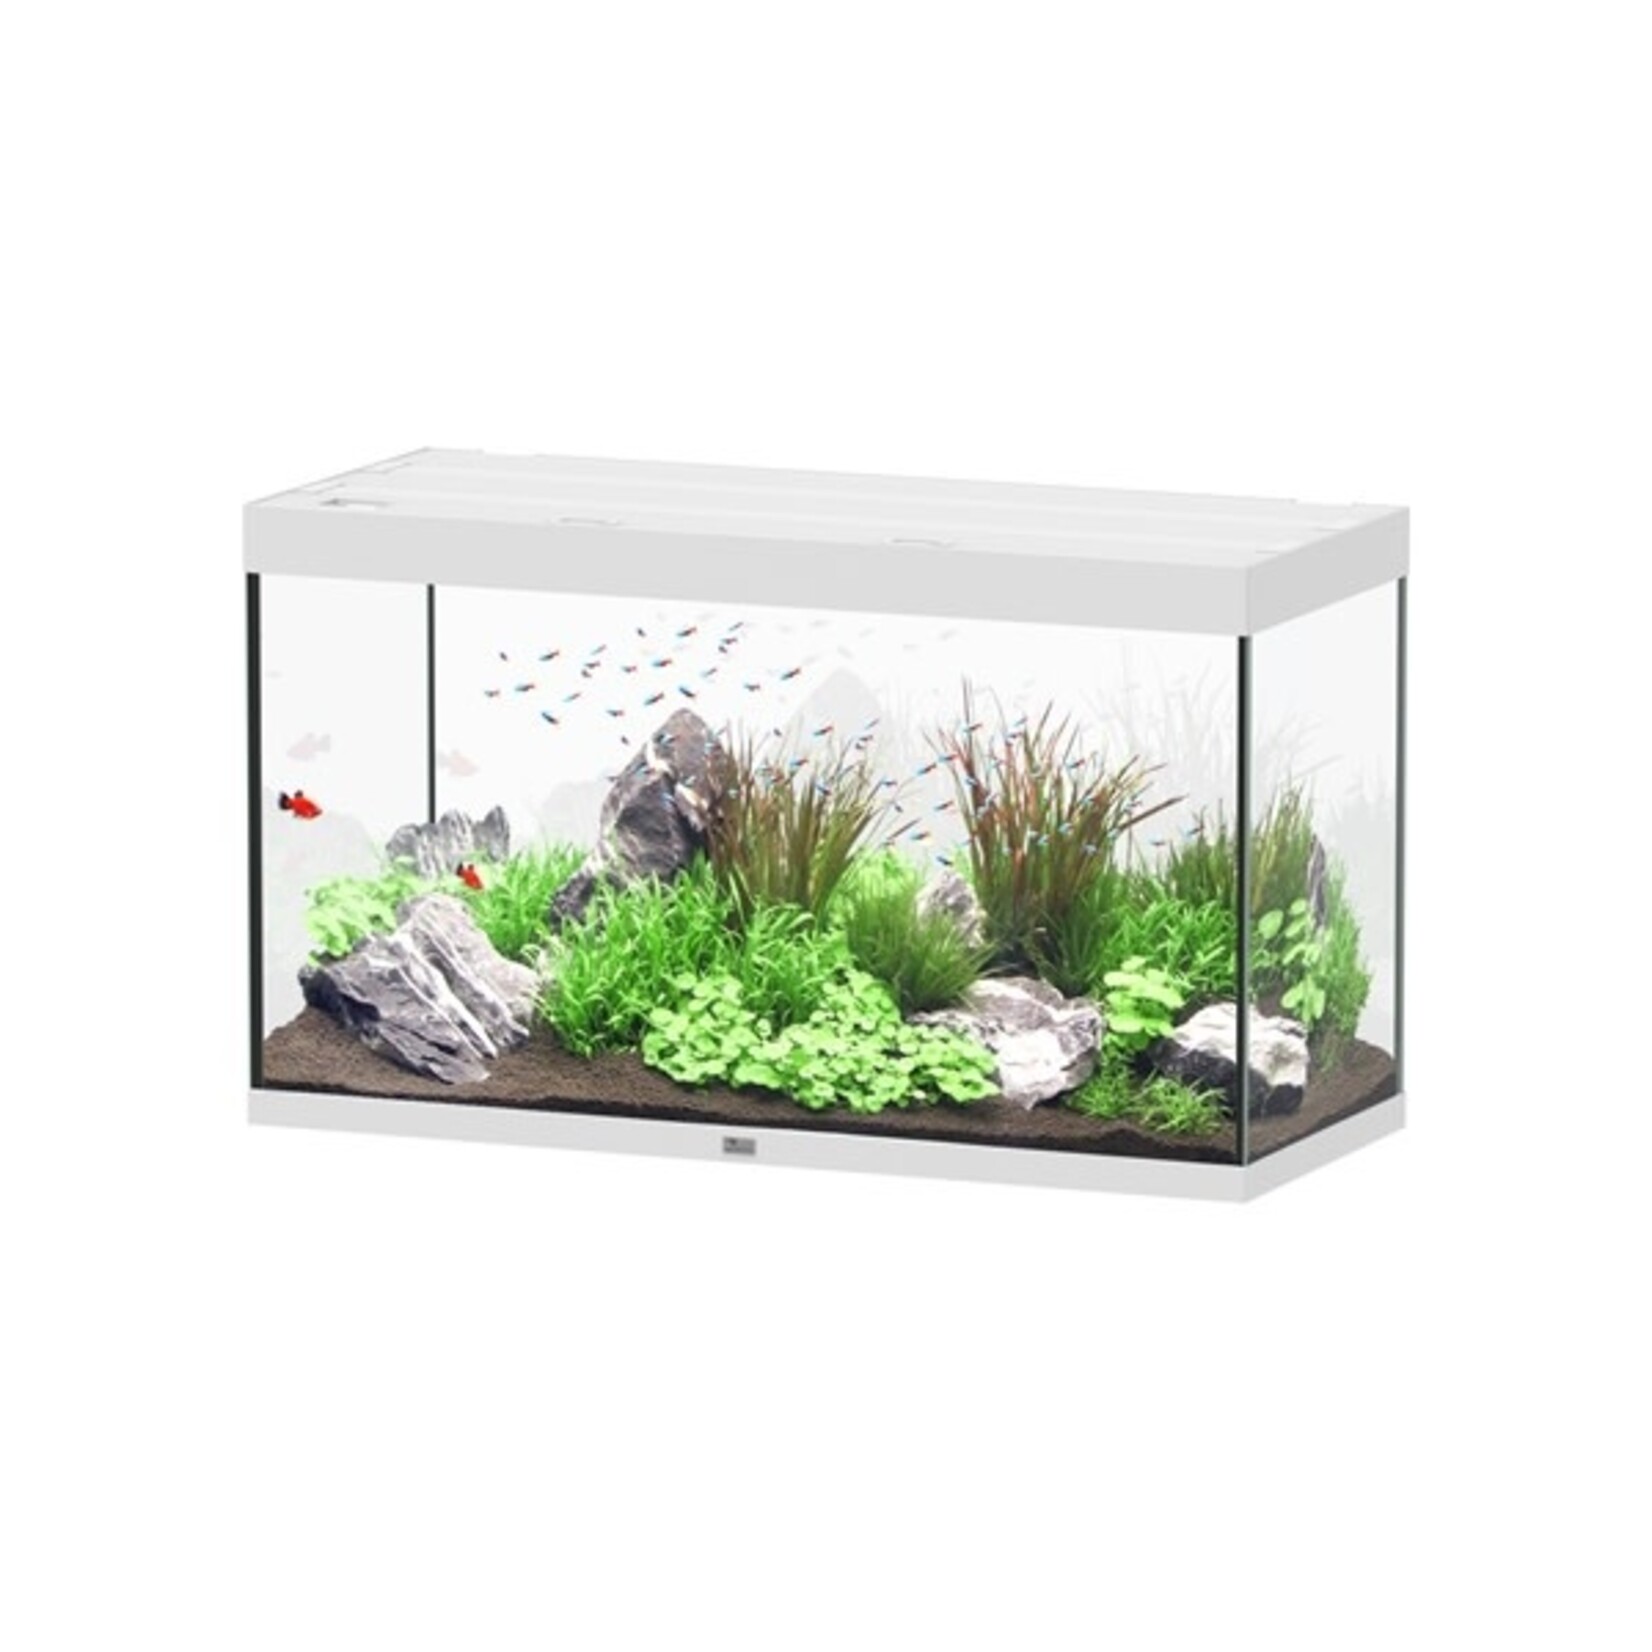 Aquatlantis Aquarium sublime 120x50 cm wit hg-064